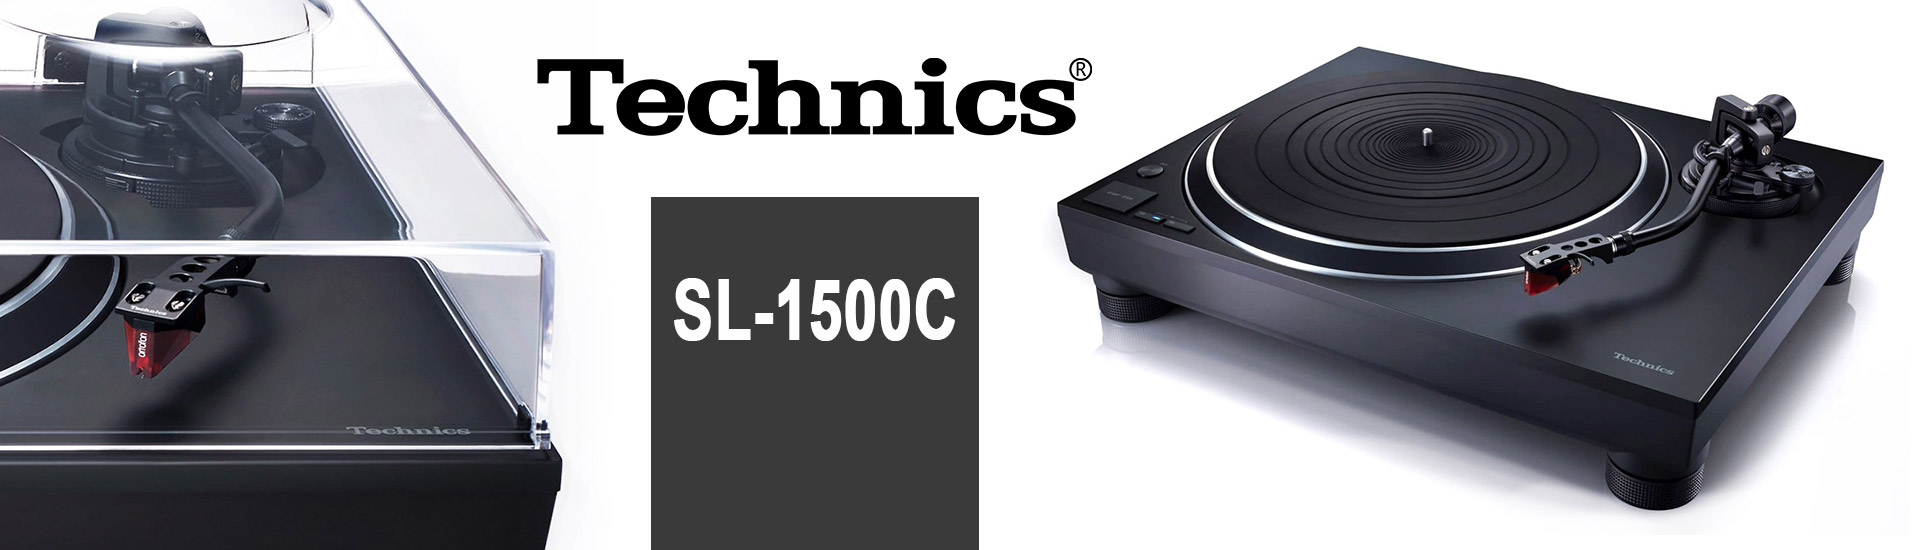 Technics SL-1500C gramofon